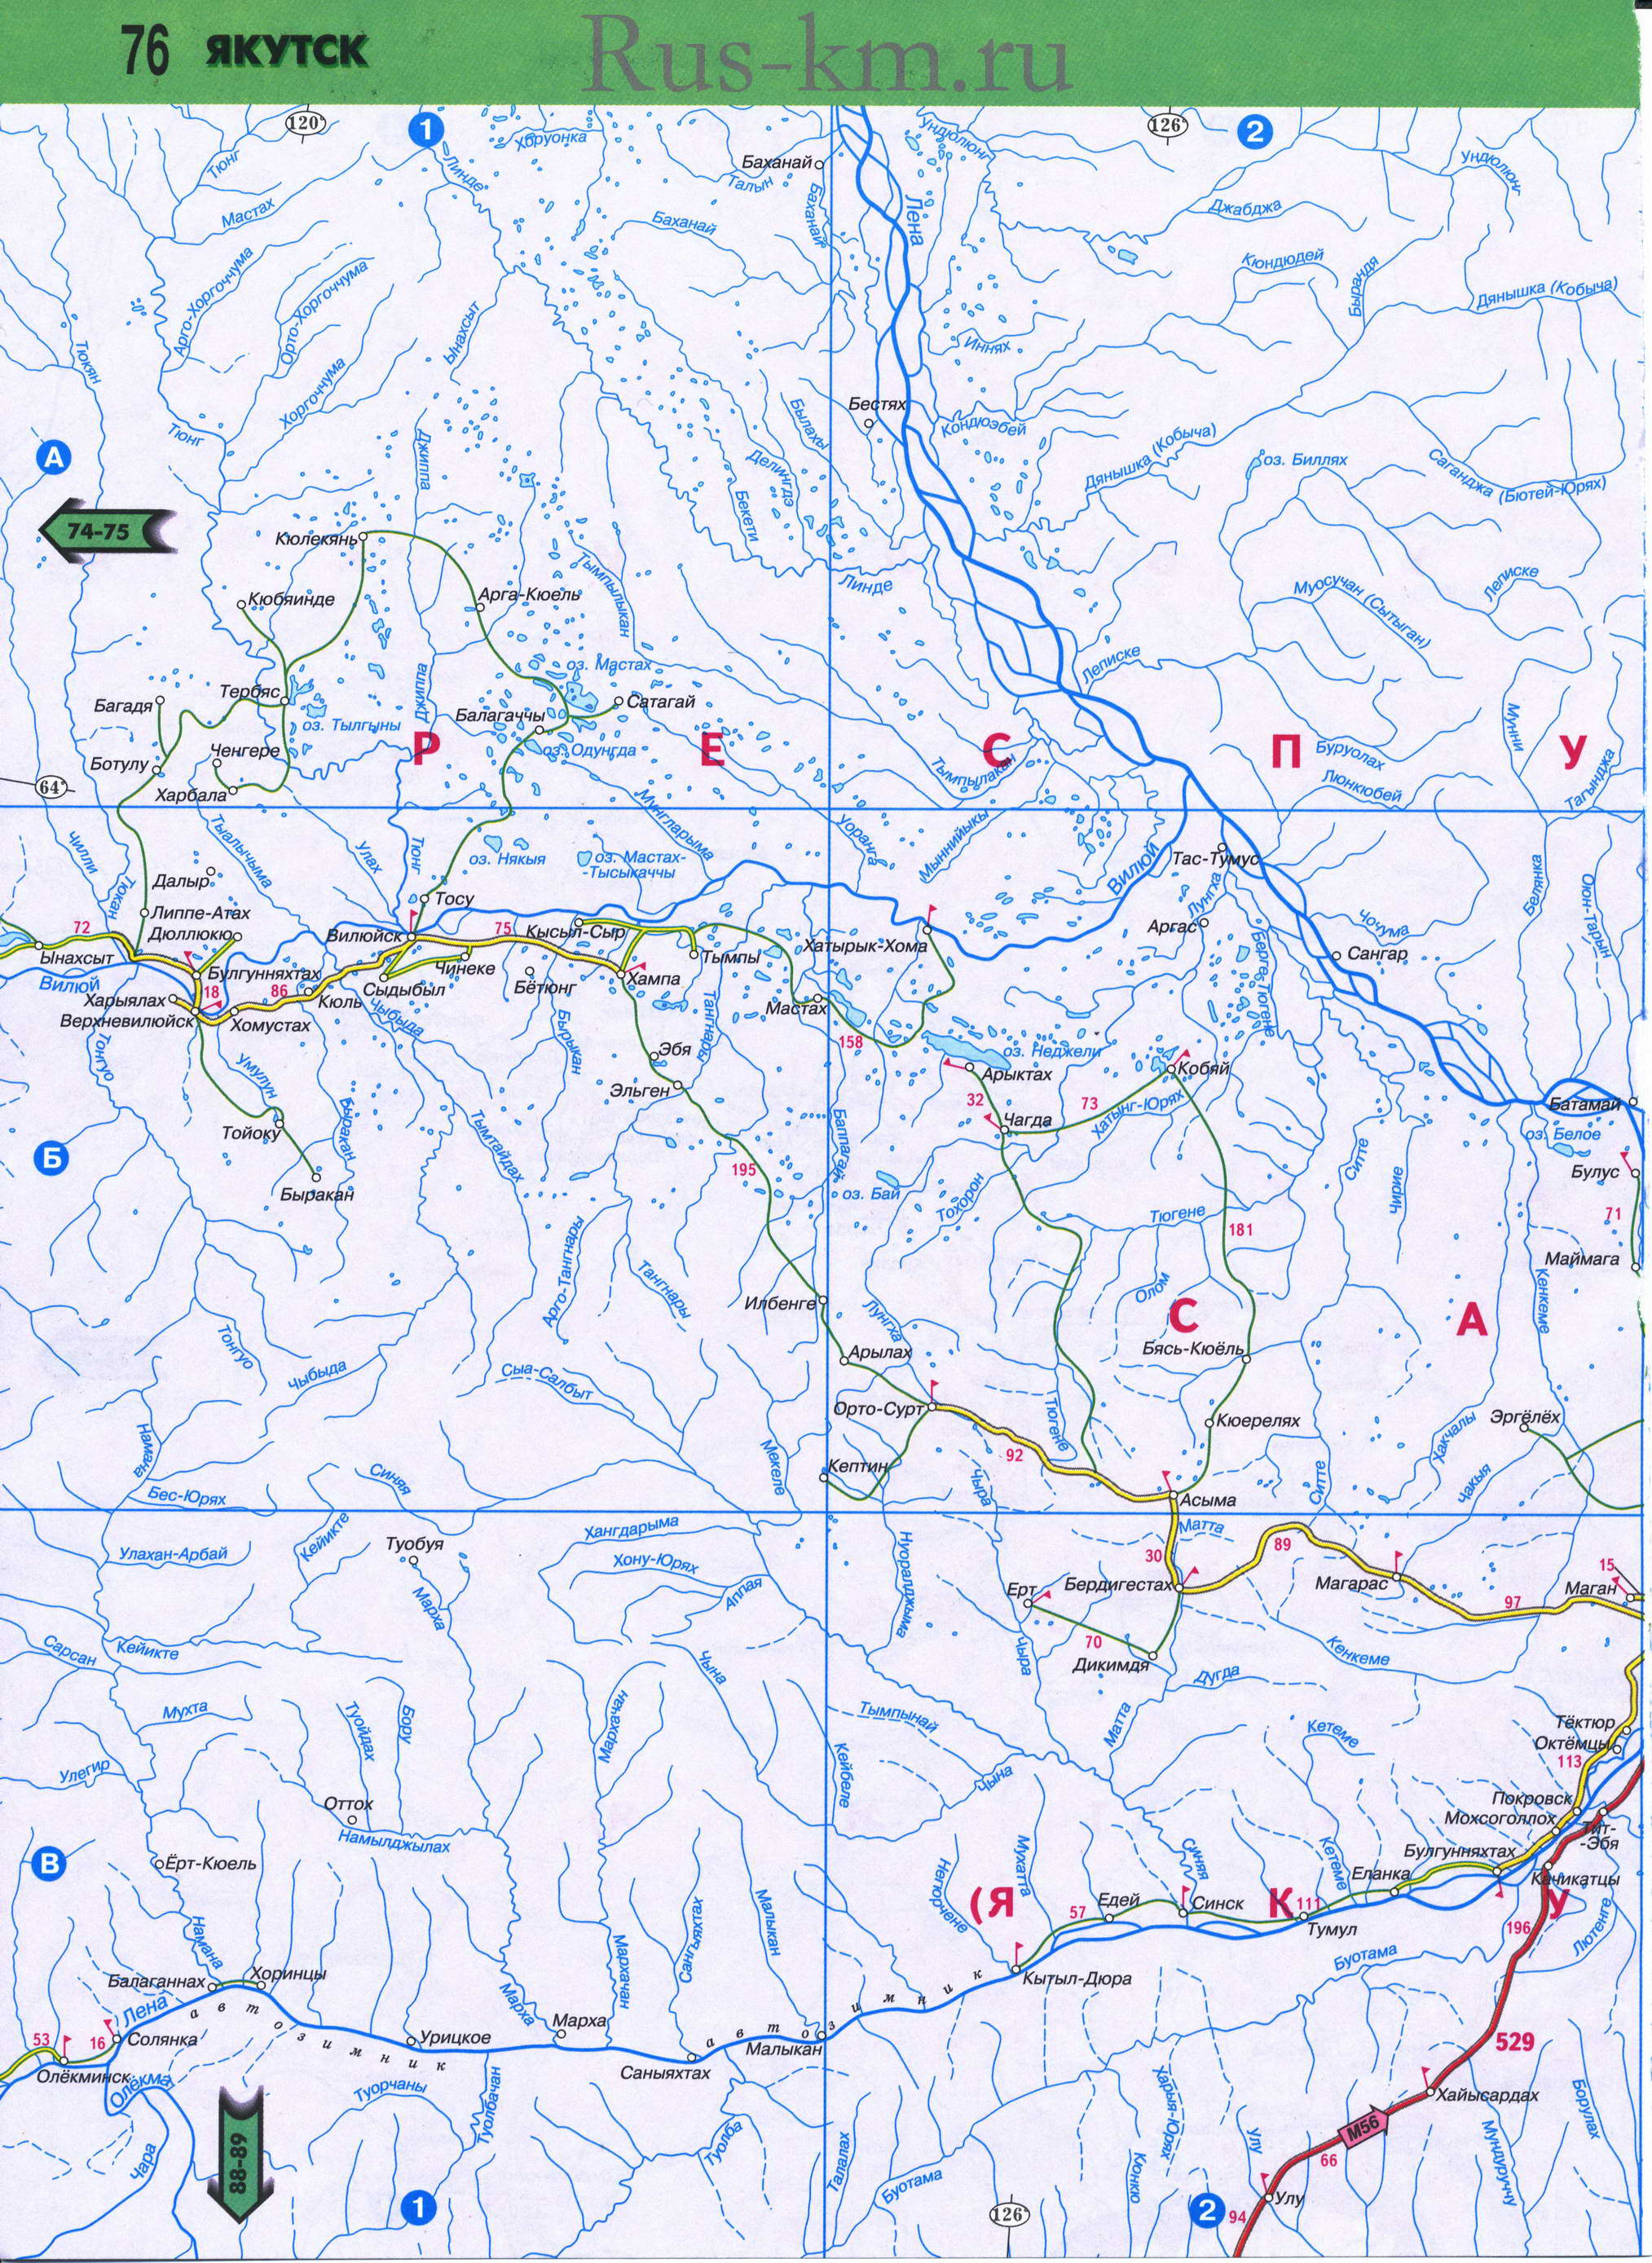 Карта Восточной Сибири автомобильная. Подробная карта автомобильных дорог Восточной Сибири из атласа России 2011 года, C0 - 